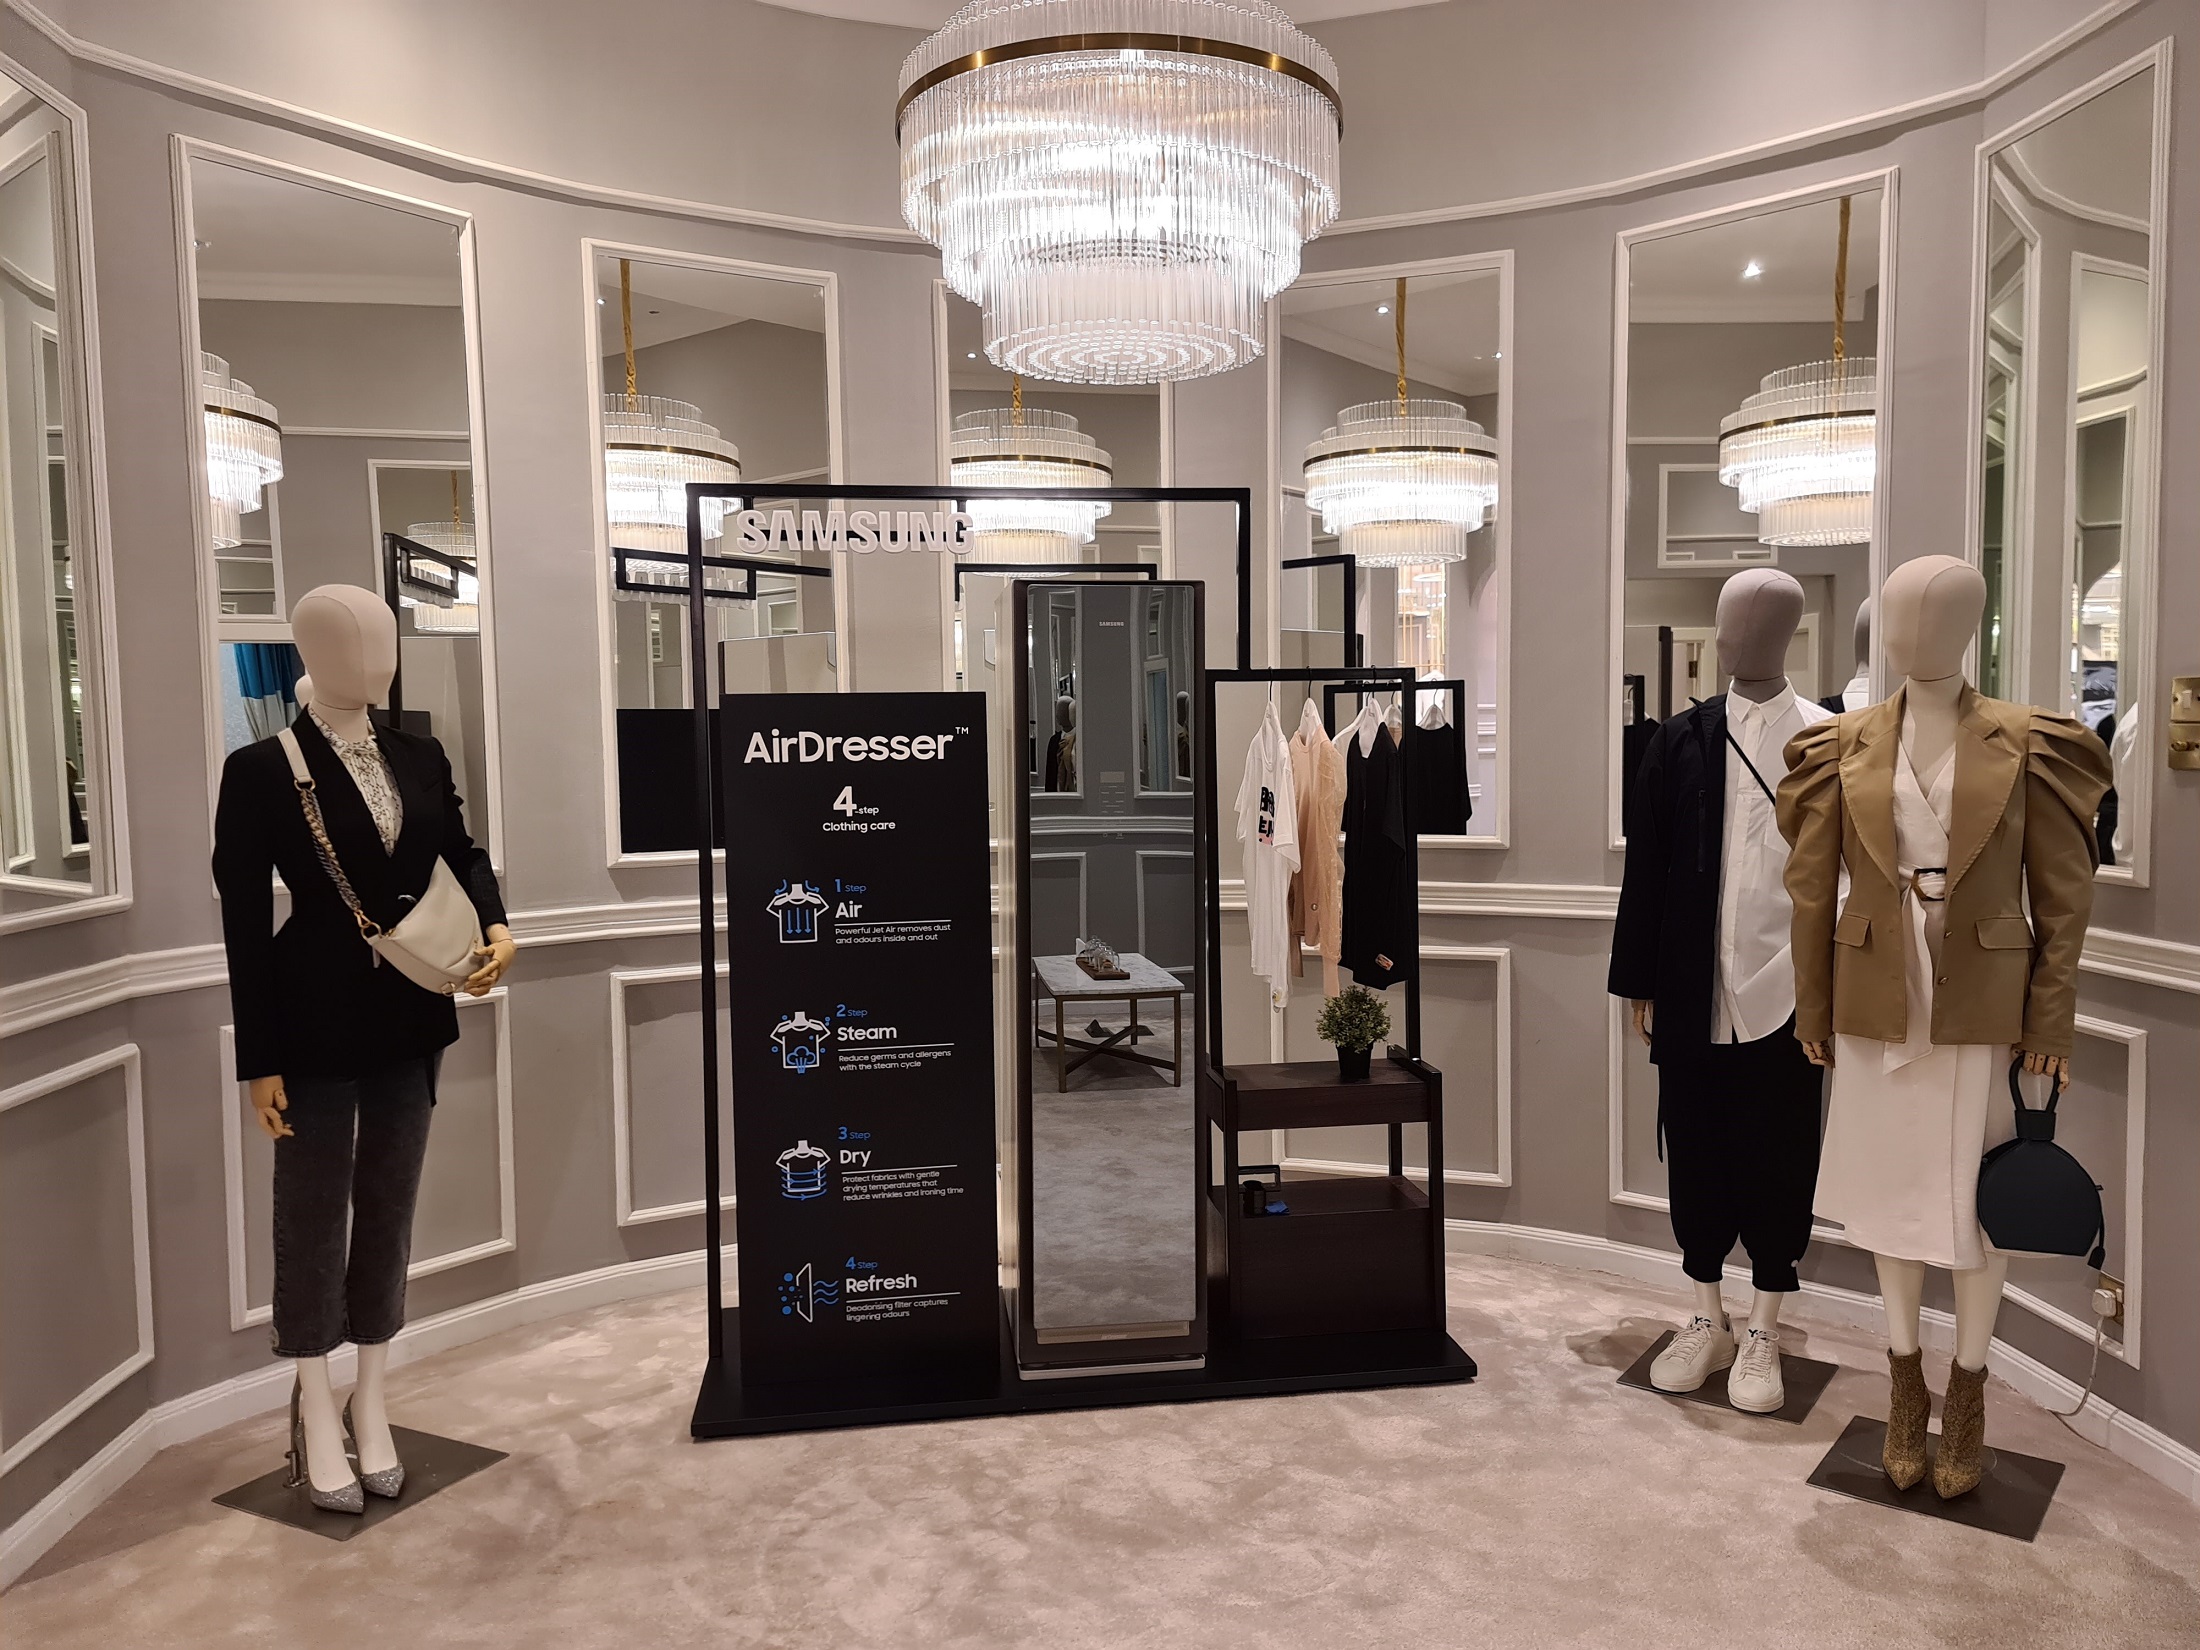 سامسونج تدعو المستهلكين في الإمارات للتعرف على جهازها المبتكر لتعقيم الملابس Air Dresser في جاليري لافاييت